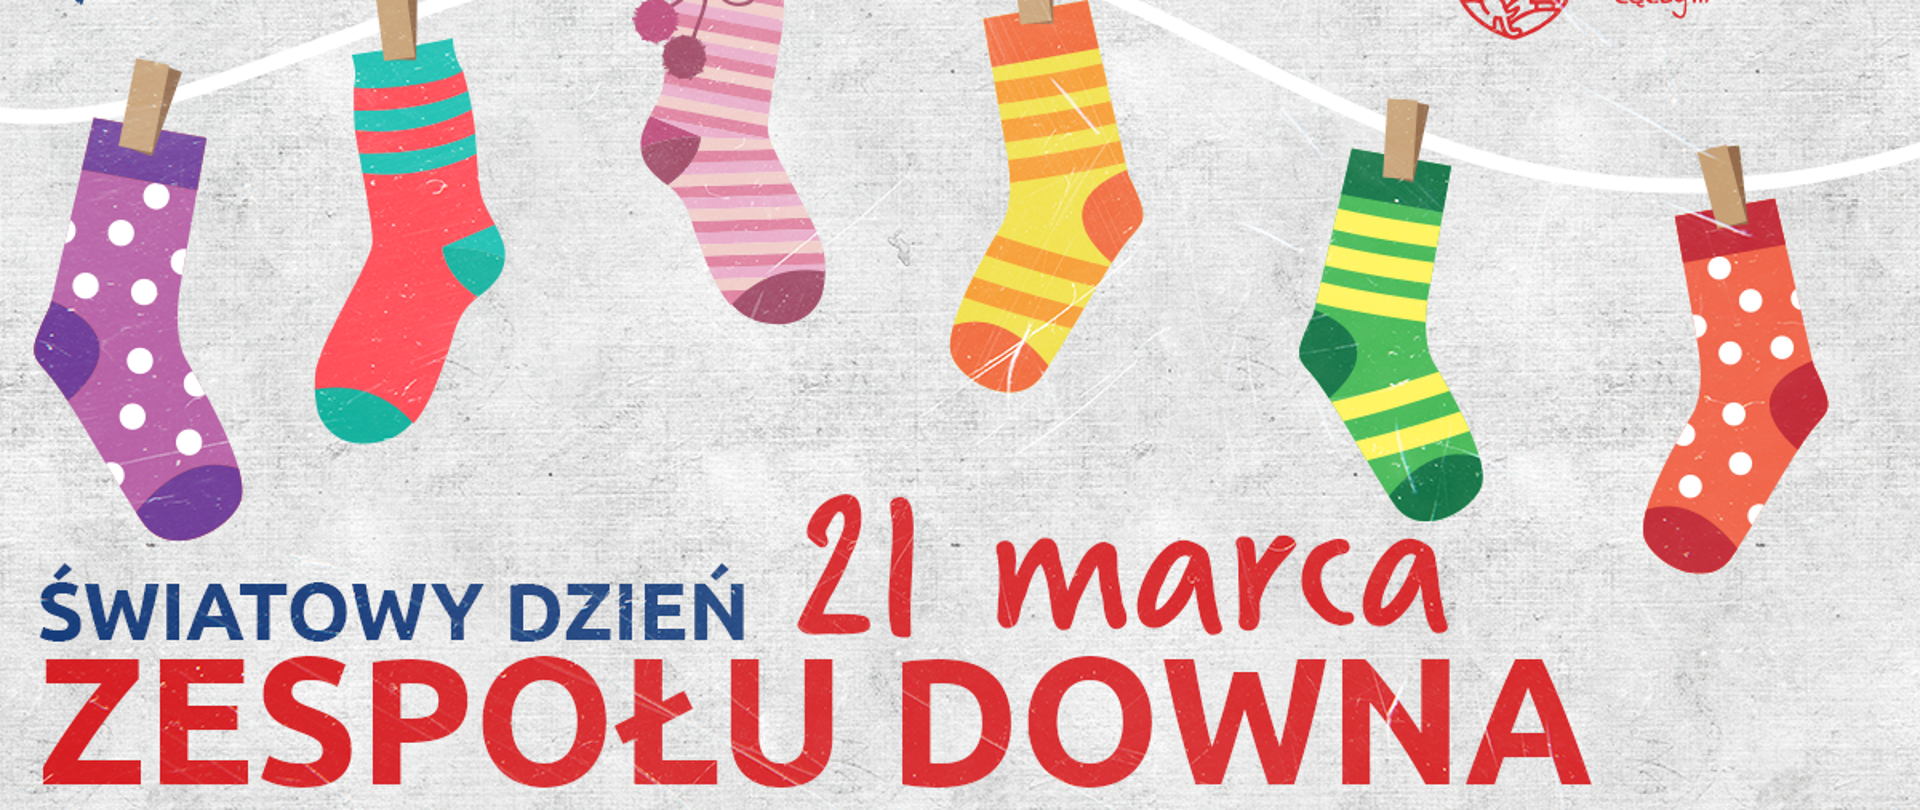 Plakat, na którym kolorowe skarpetki wiszą na sznurki i to informuje o Światowym Dniu Zespołu Downa, który przypada 21 marca